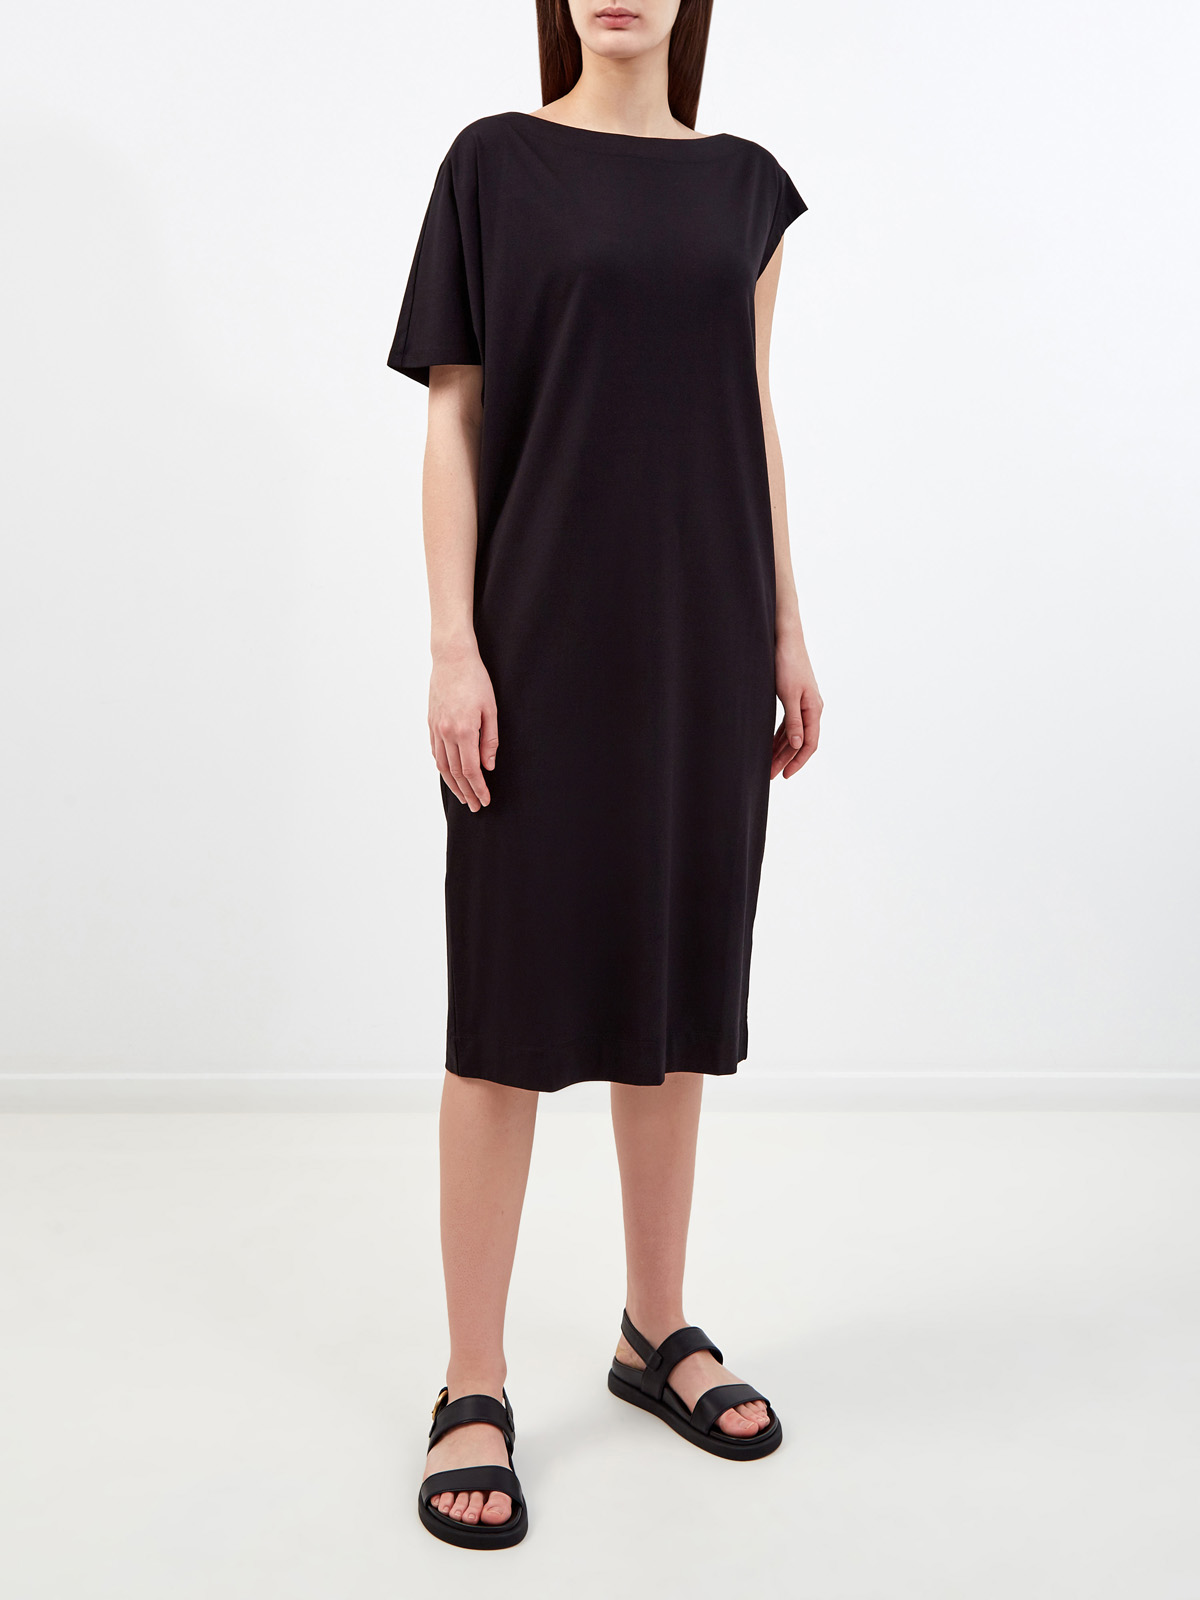 Хлопковое платье в расслабленном стиле с асимметричными рукавами RE VERA, цвет черный, размер M;L;XL;2XL;3XL;S - фото 3